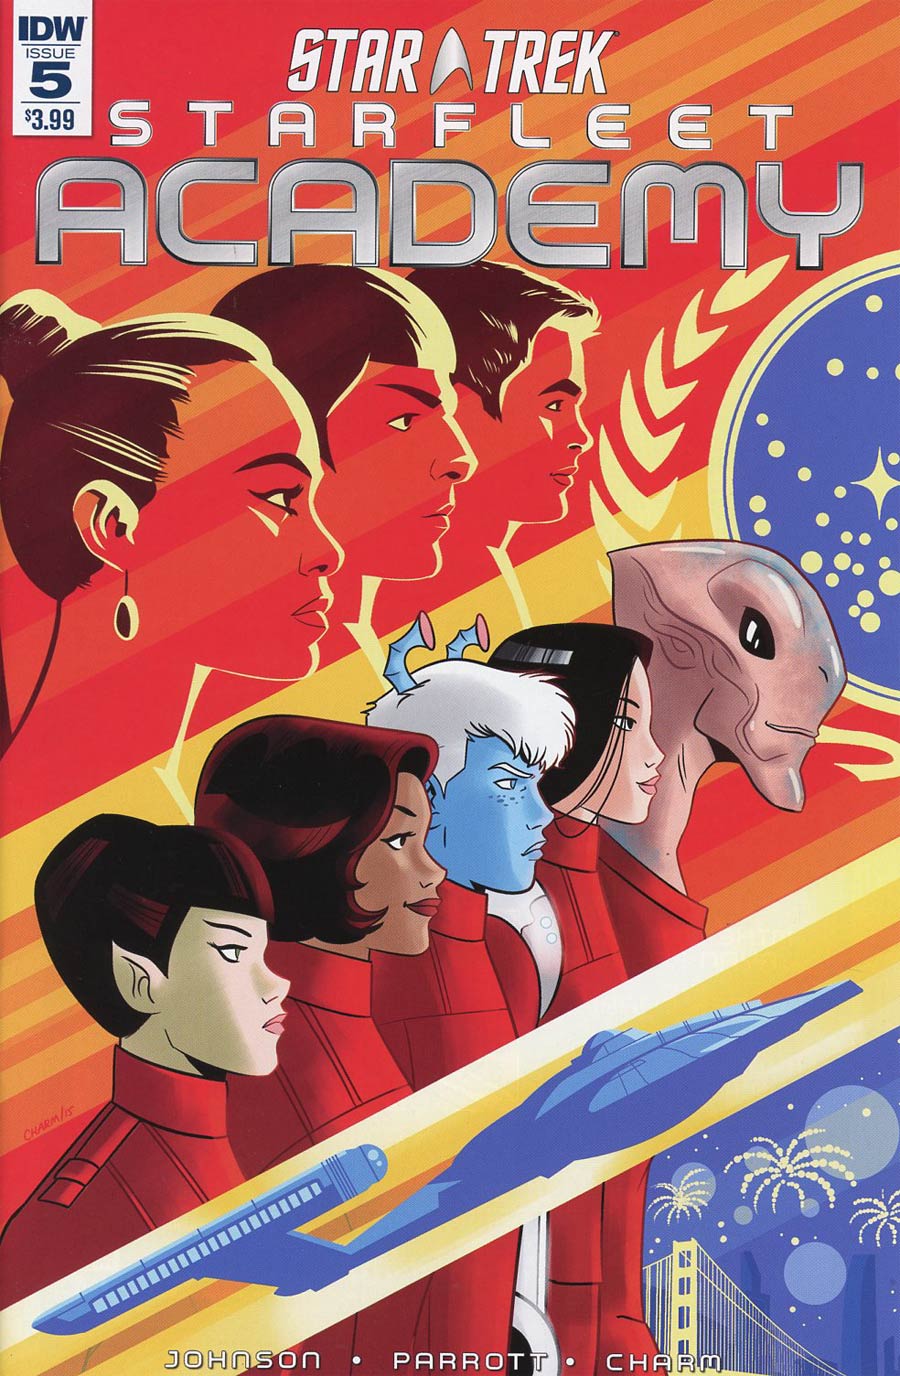 Star Trek Starfleet Academy (IDW) #5 Cover A Regular Derek Charm Cover